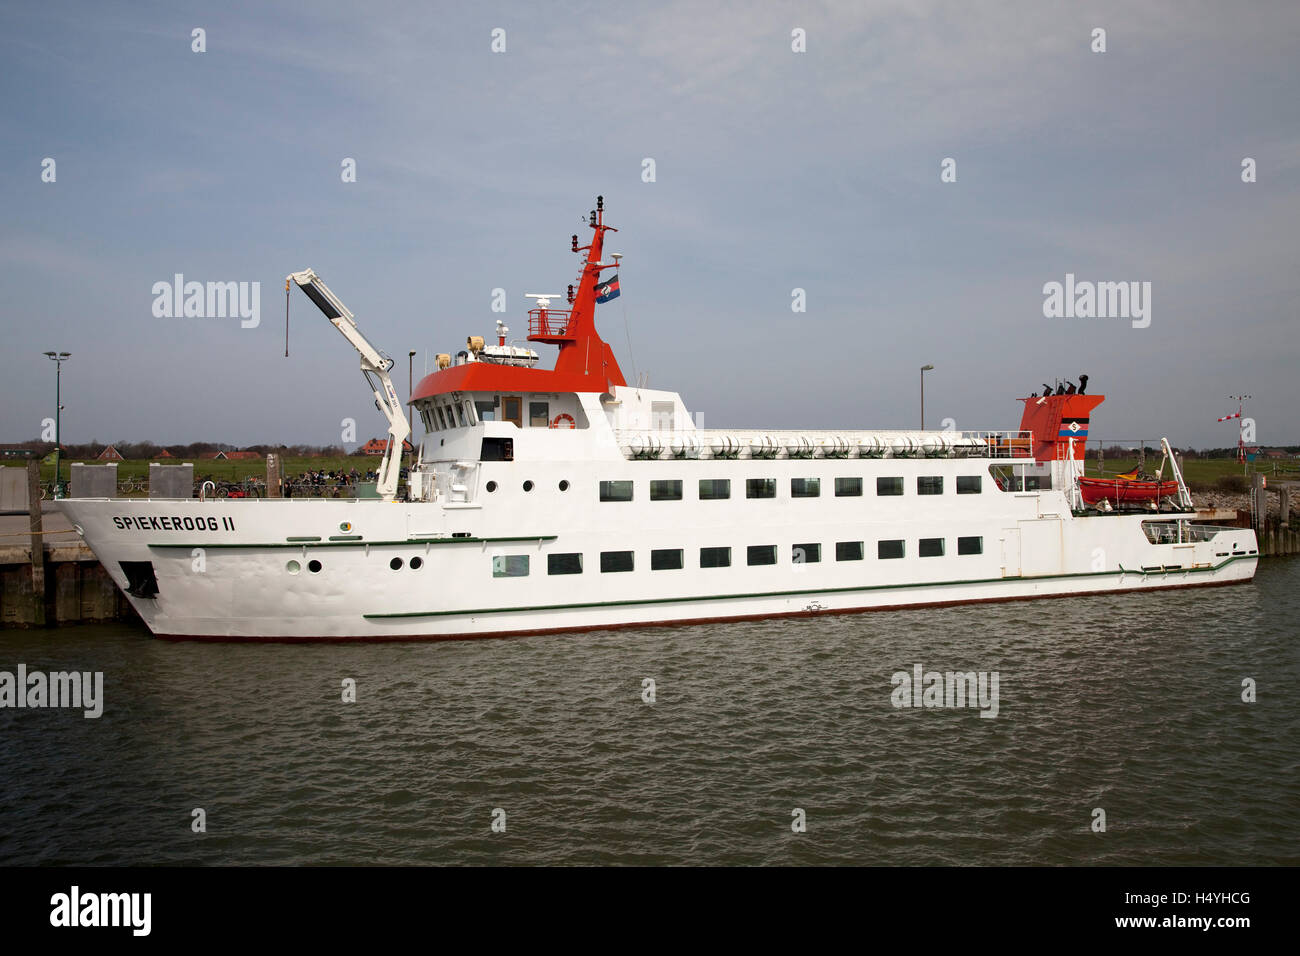 Fähre namens Spiekeroog II am Hafen, Insel Spiekeroog, Ostfriesland, Niedersachsen Stockfoto